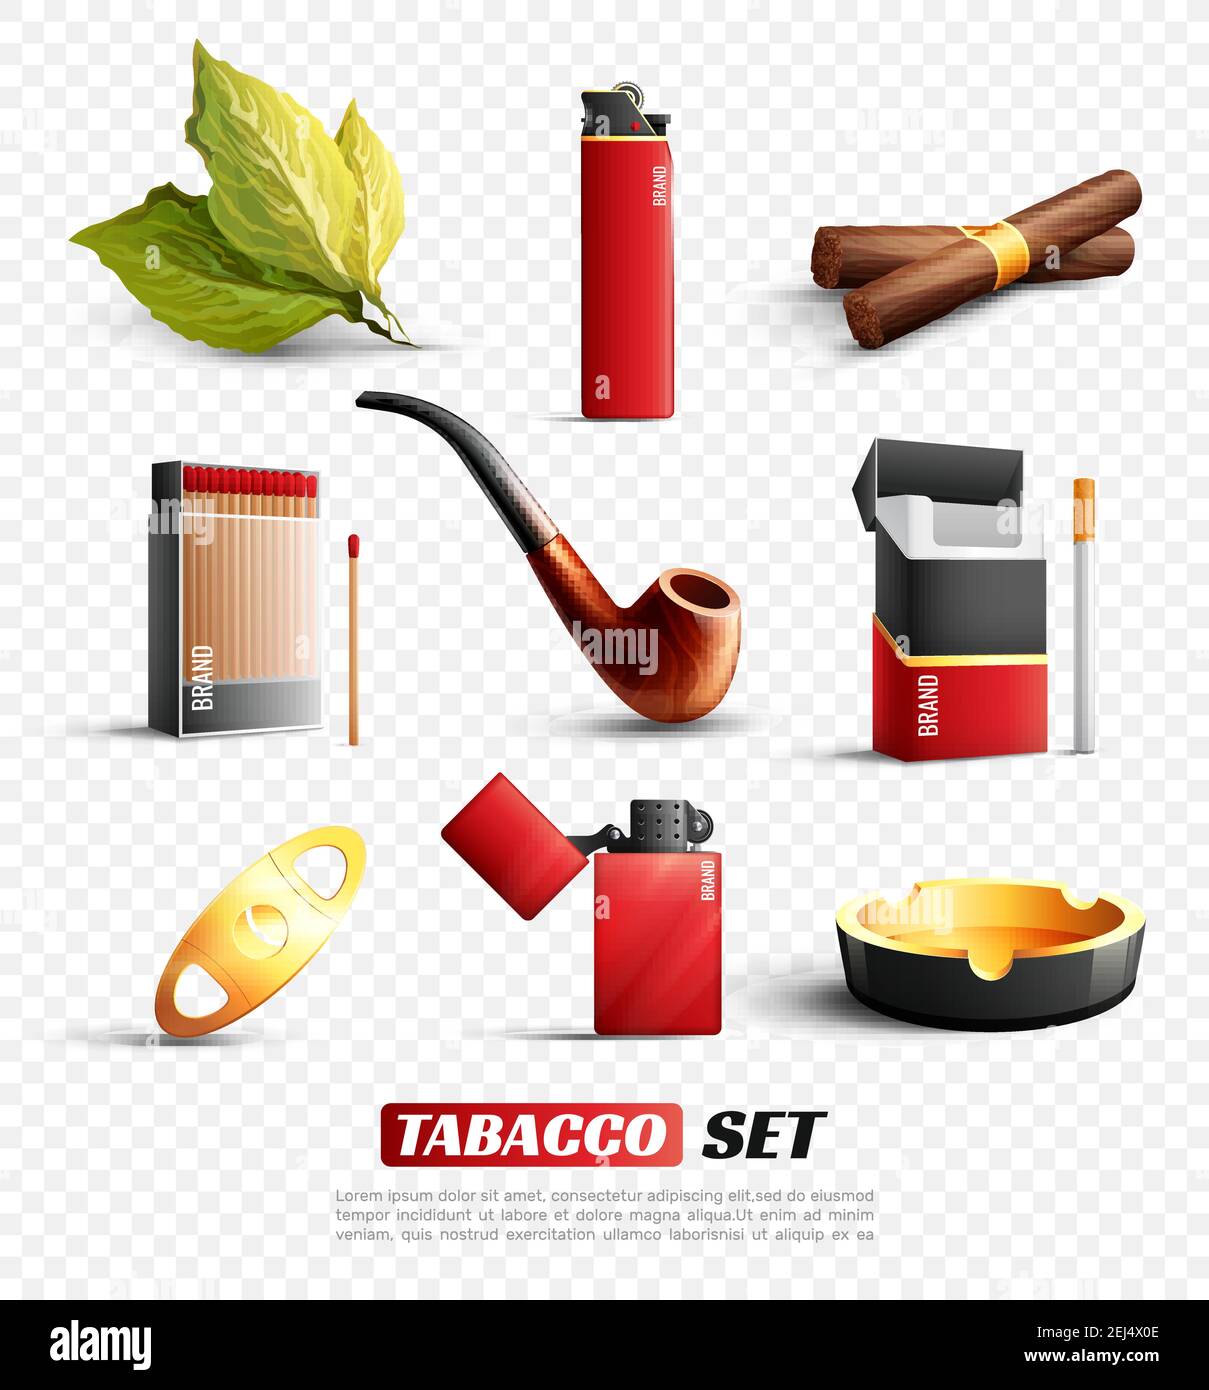 Ensemble de produits et accessoires du tabac, y compris les cigares, les  cigarettes, les briquets et le cendrier, isolés sur une illustration  vectorielle transparente Image Vectorielle Stock - Alamy